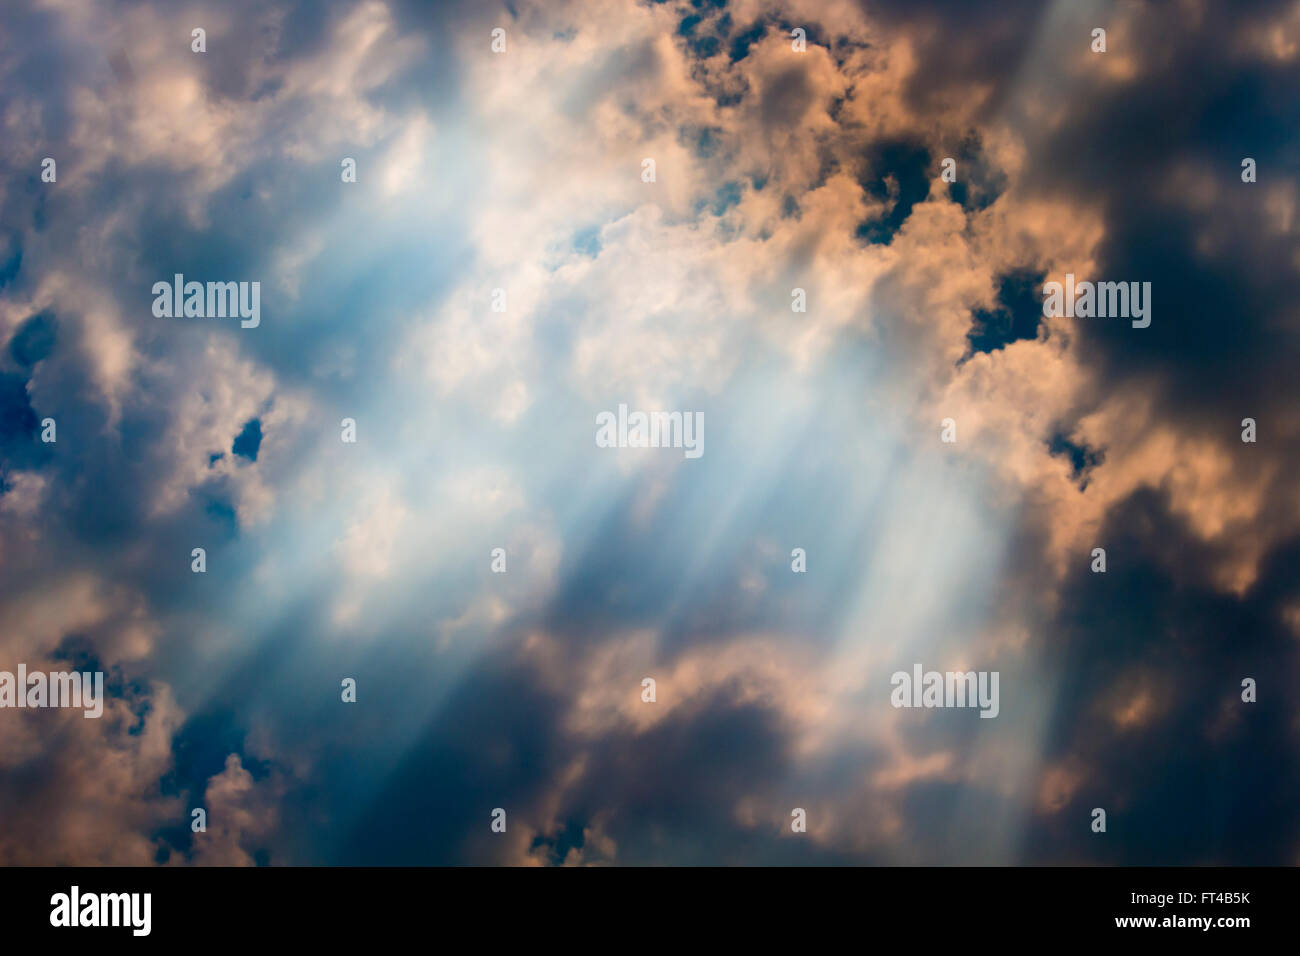 El humo de un nebuloso raging dichas quemas cerca de mantas de las esponjosas nubes en el azul cielo australiano en verano. Foto de stock